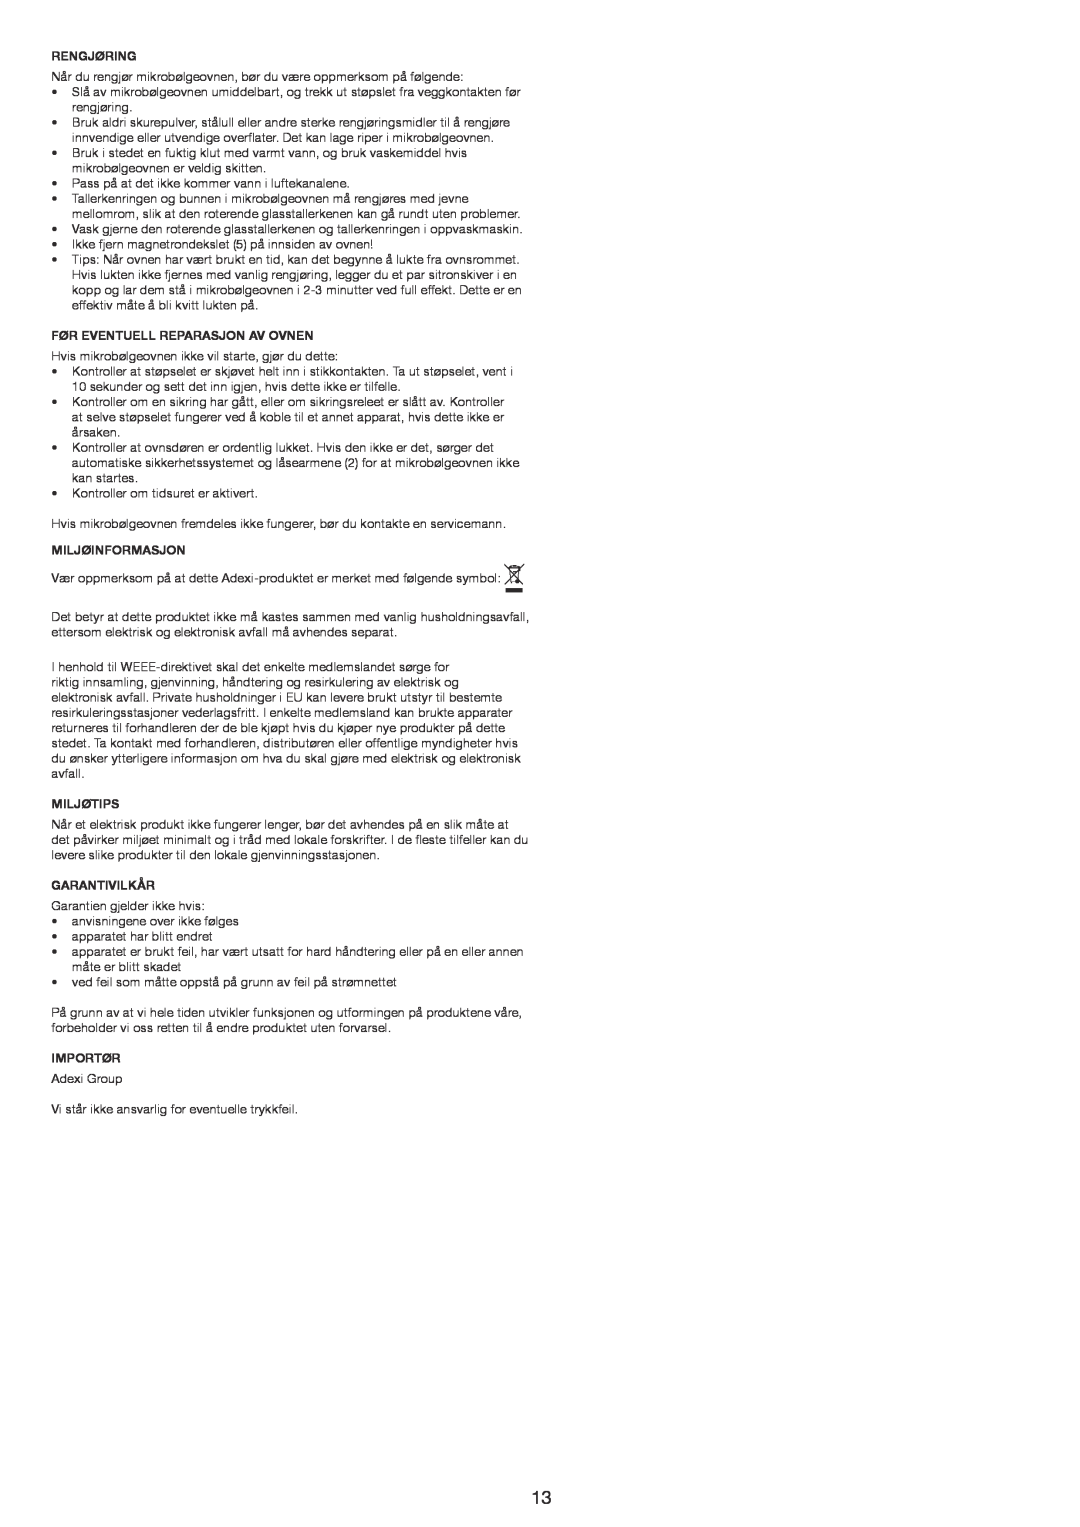 Melissa 753-121 manual Rengjøring, Før Eventuell Reparasjon Av Ovnen, Miljøinformasjon, Miljøtips, Garantivilkår, Importør 